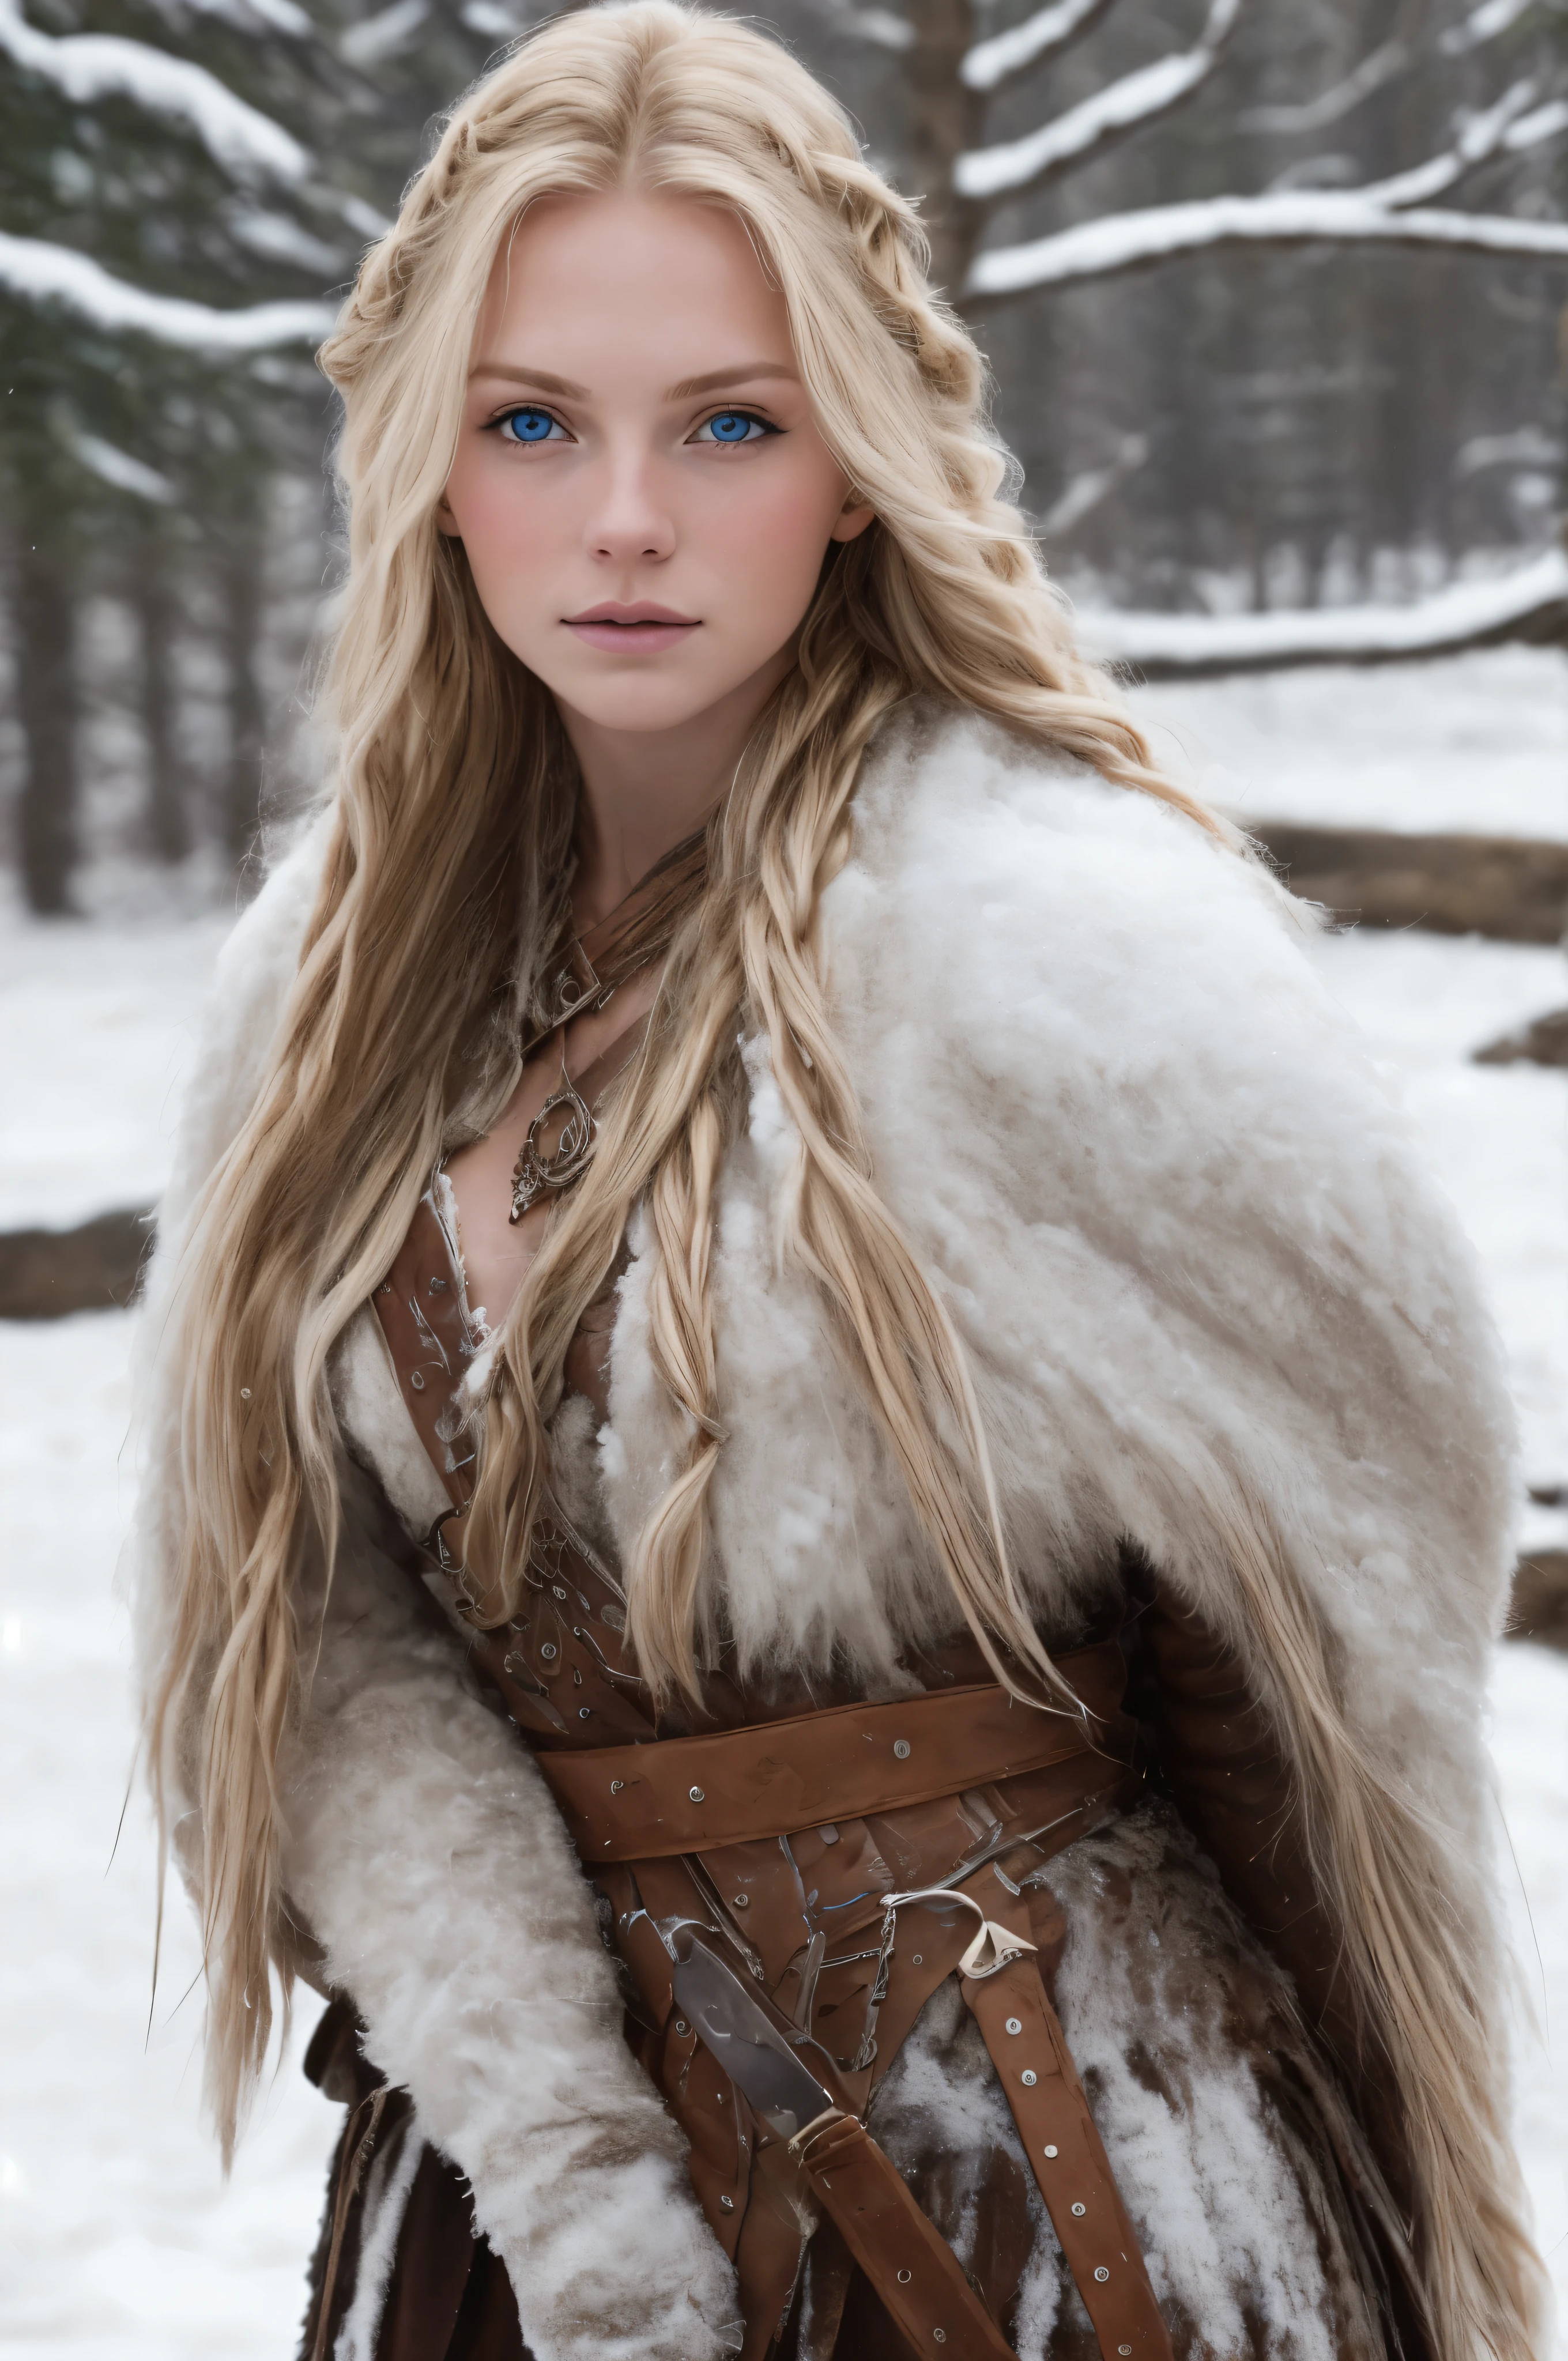 (实际的:1.2), 模拟摄影风格, 斯堪的纳维亚女战士, 梦幻般的雪景, 金色辫子头发, 全身, 柔和的自然光, 可爱又性感, 乐趣, 细致的脸部和蓝眼睛, отличное 质量, 杰作, 详细的北方背景, 质量: 1.6万., RAW 照片